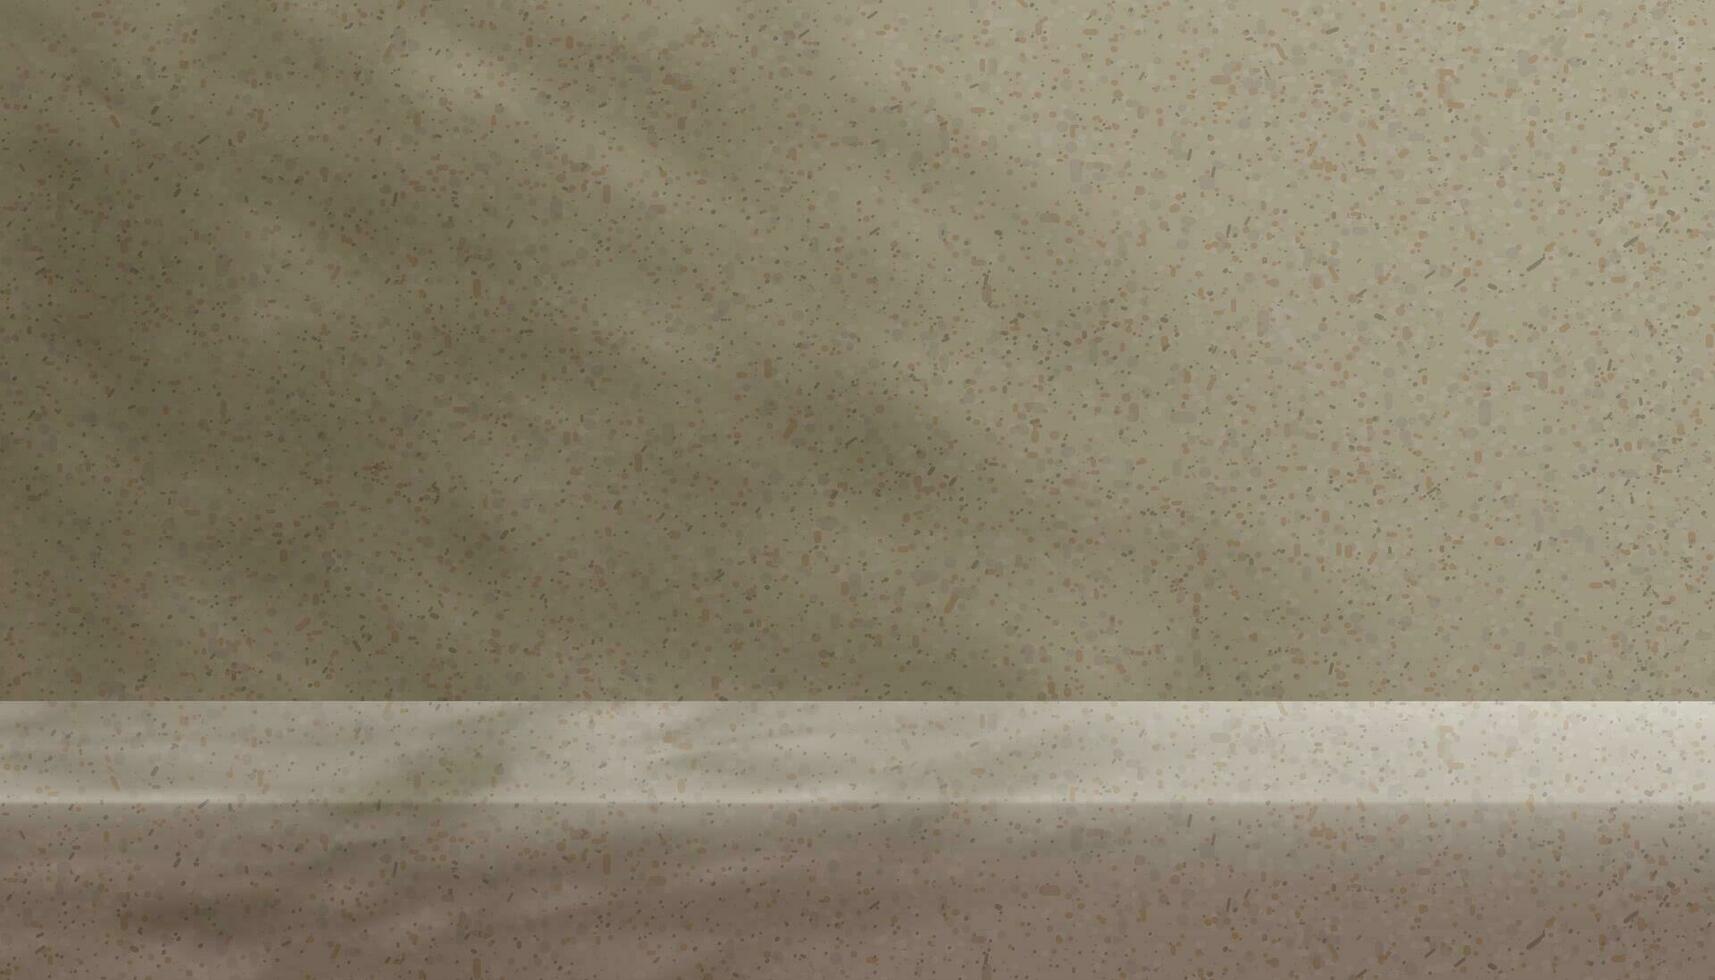 studio bakgrund visa med skugga löv på terrazzo marmor vägg rum, tomt Galleri med solljus på granit golv, koncept för kosmetisk produkt presentation, försäljning, online affär i höst säsong vektor